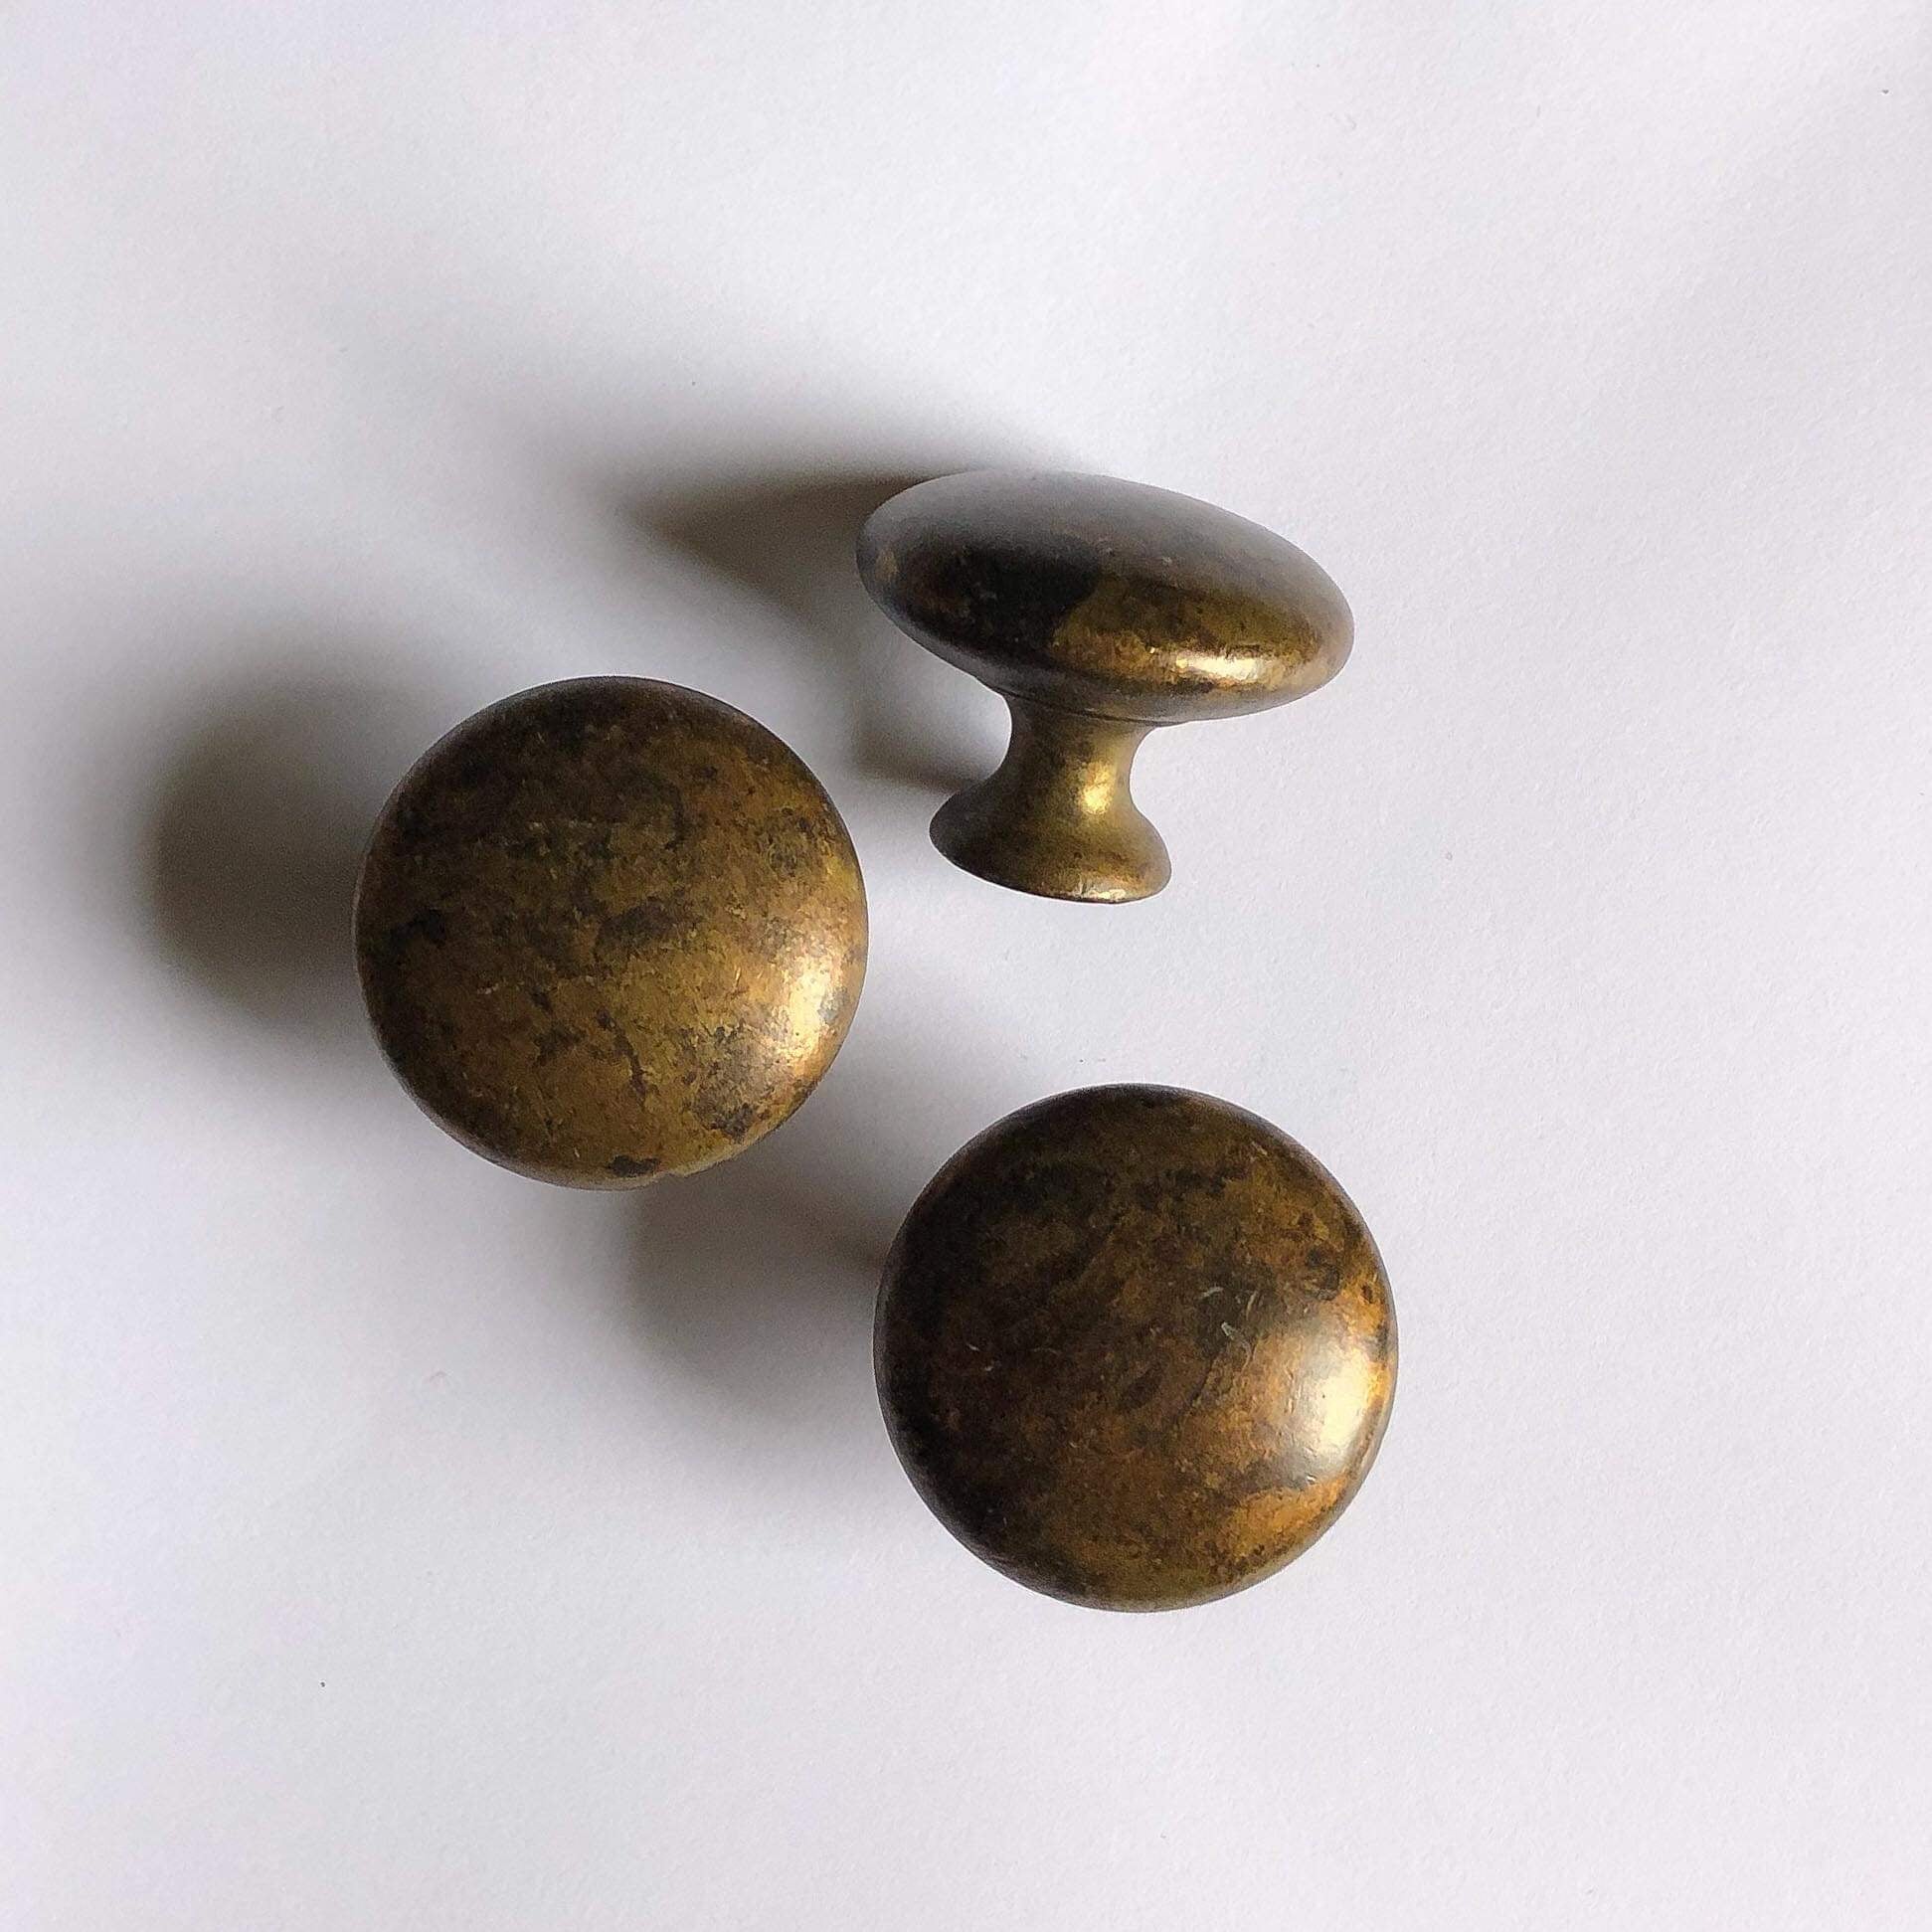 Aged Brass "Button" Cupboard Knob, 35mm